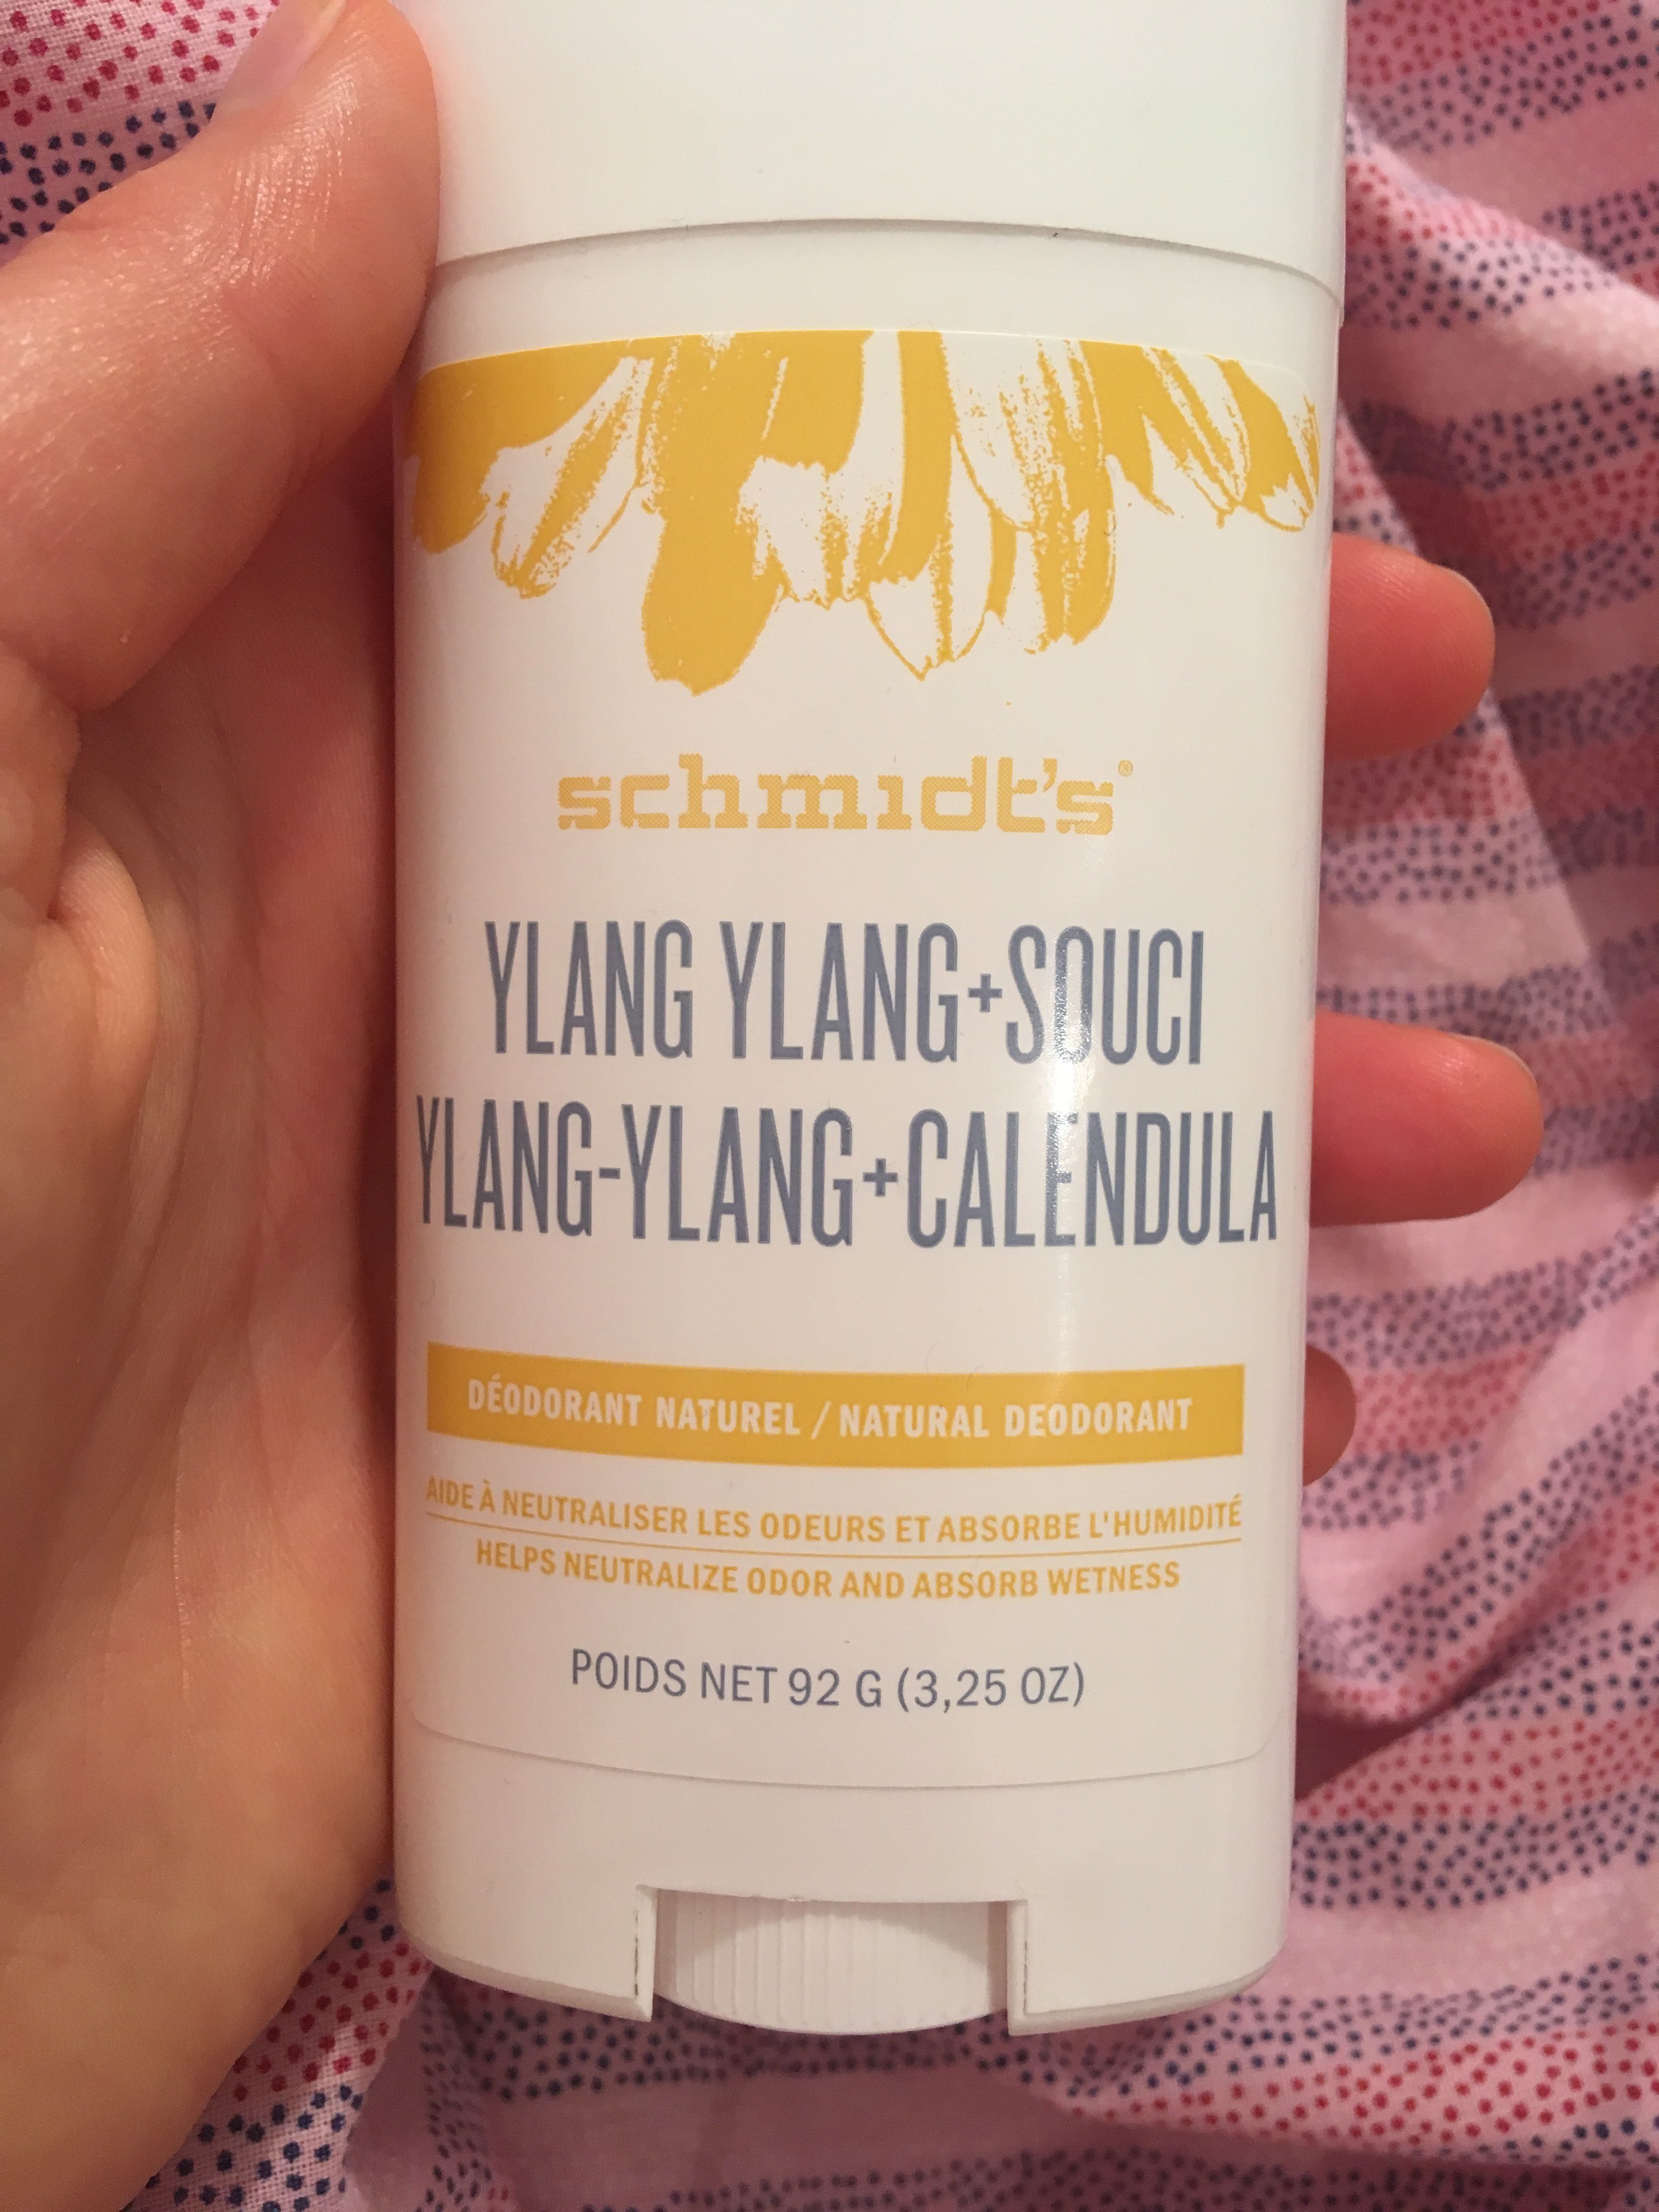 Ylang-Ylang + Calendula Deodorant naturel - 製品 - fr